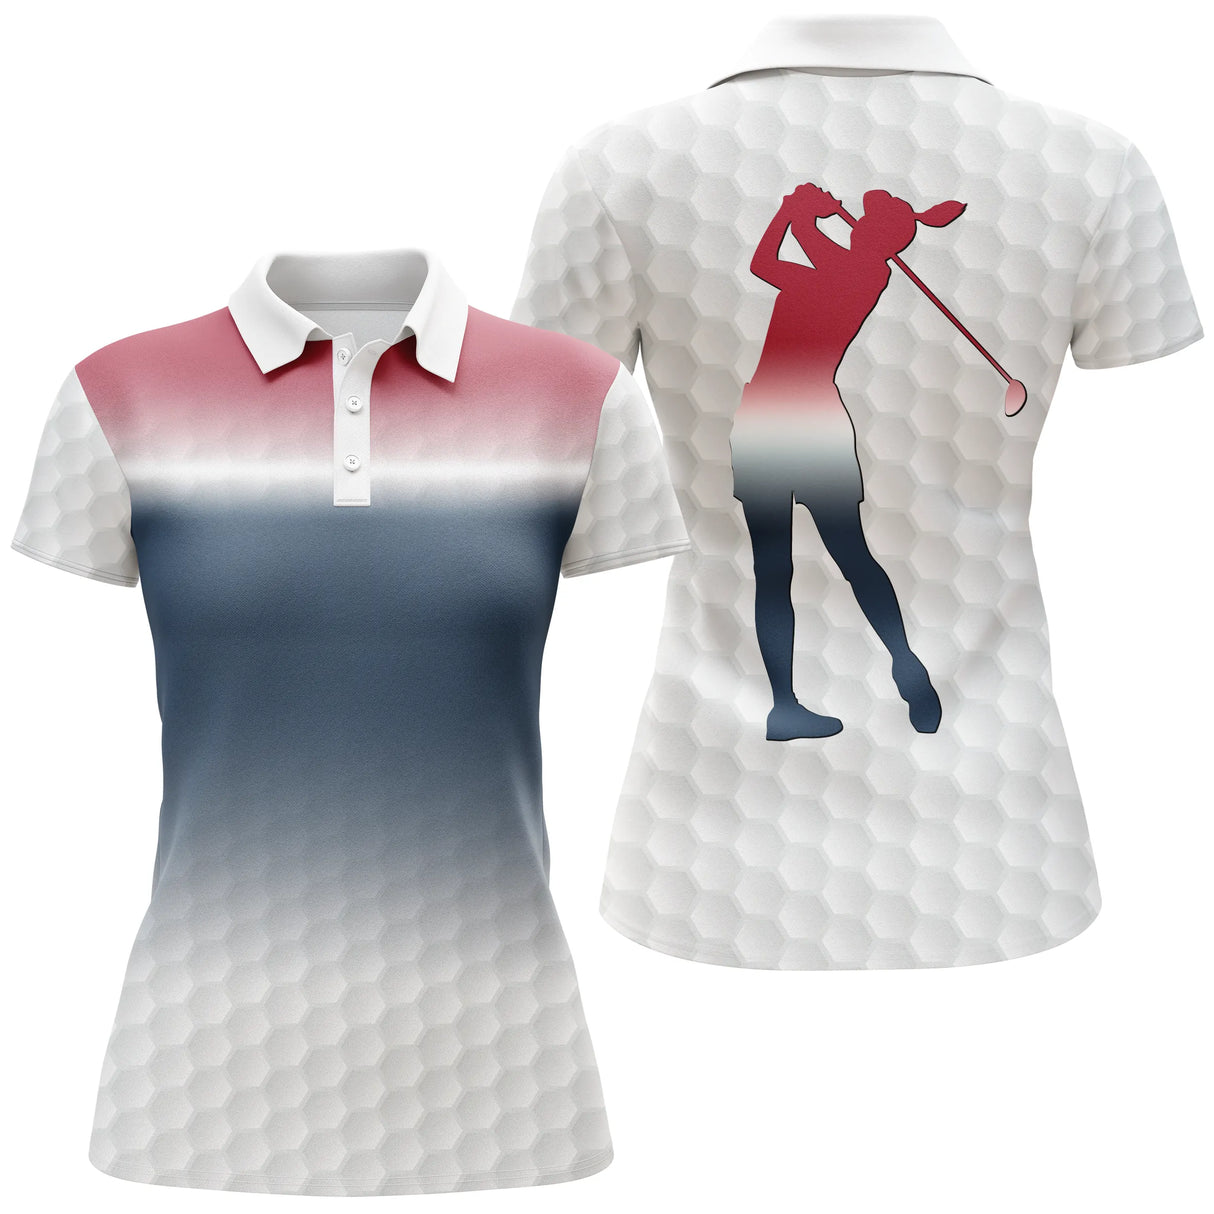 Chiptshirts - Polo De Golf, Cadeau Idéal Pour Fans De Golf, Polo de Sport Homme et Femme, Motifs Balle de Golf, Golfeur, Golfeuse - CTS26052207